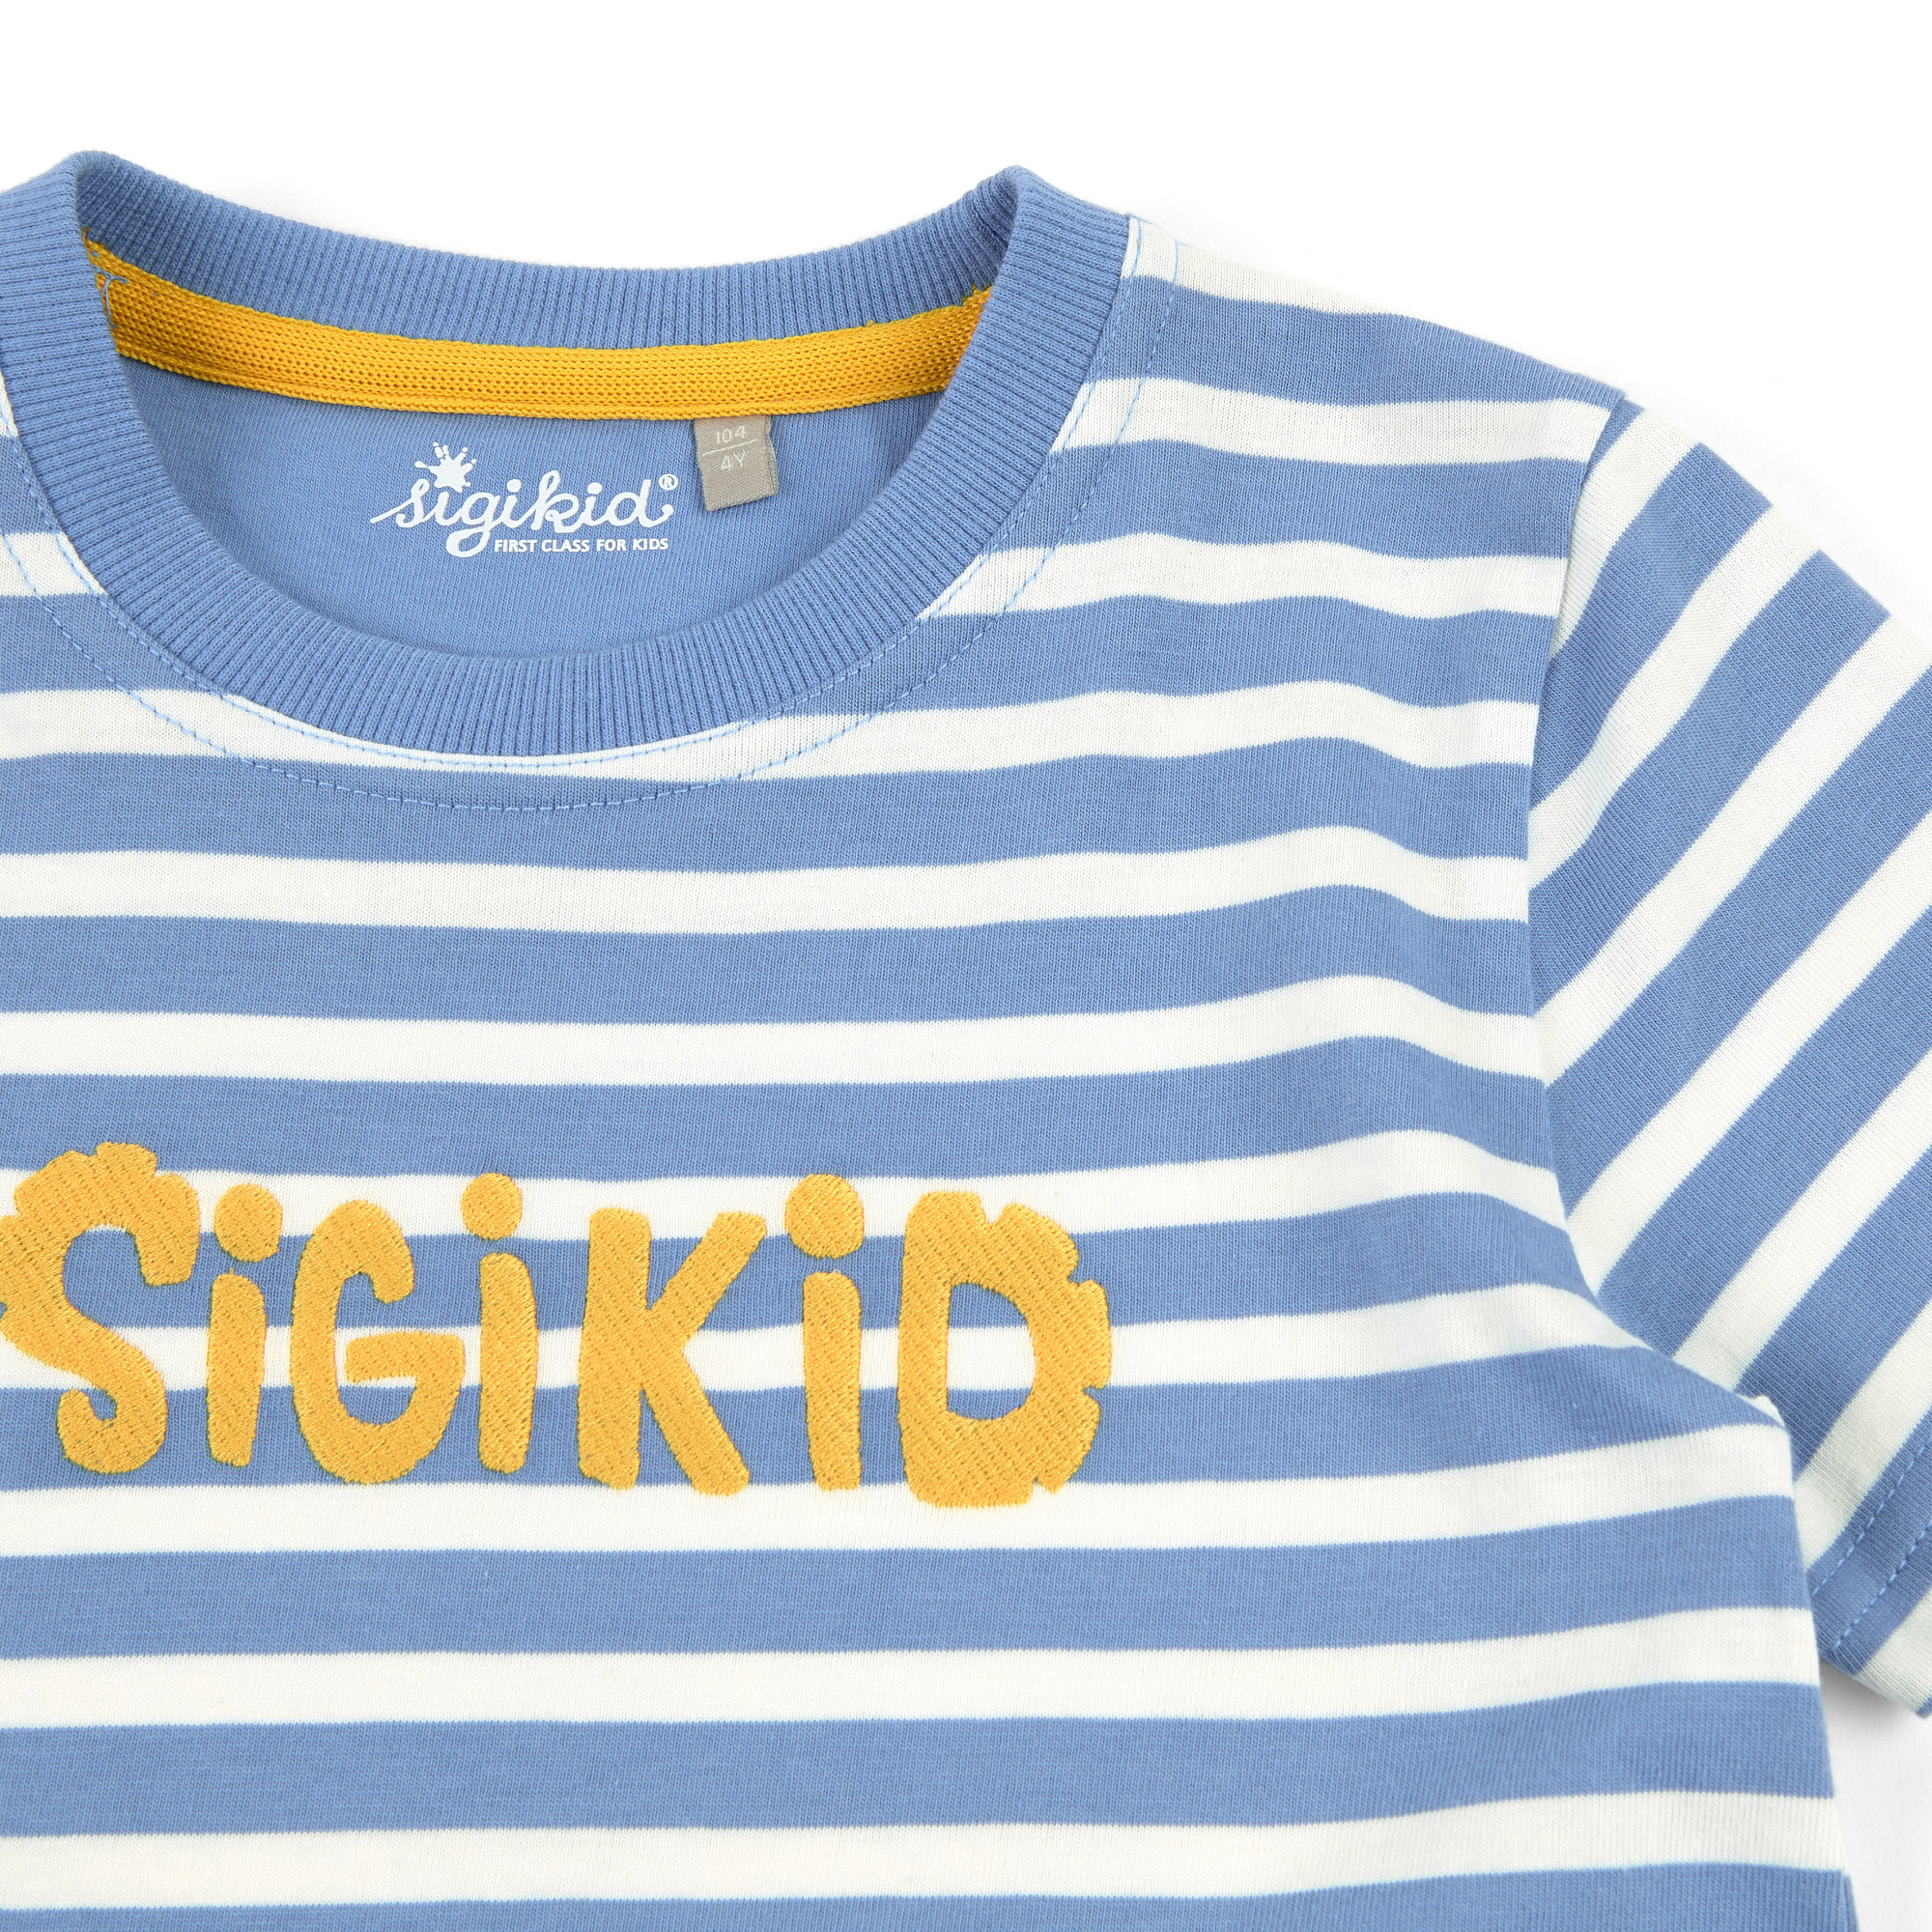 Children's T-shirt blue/white striped